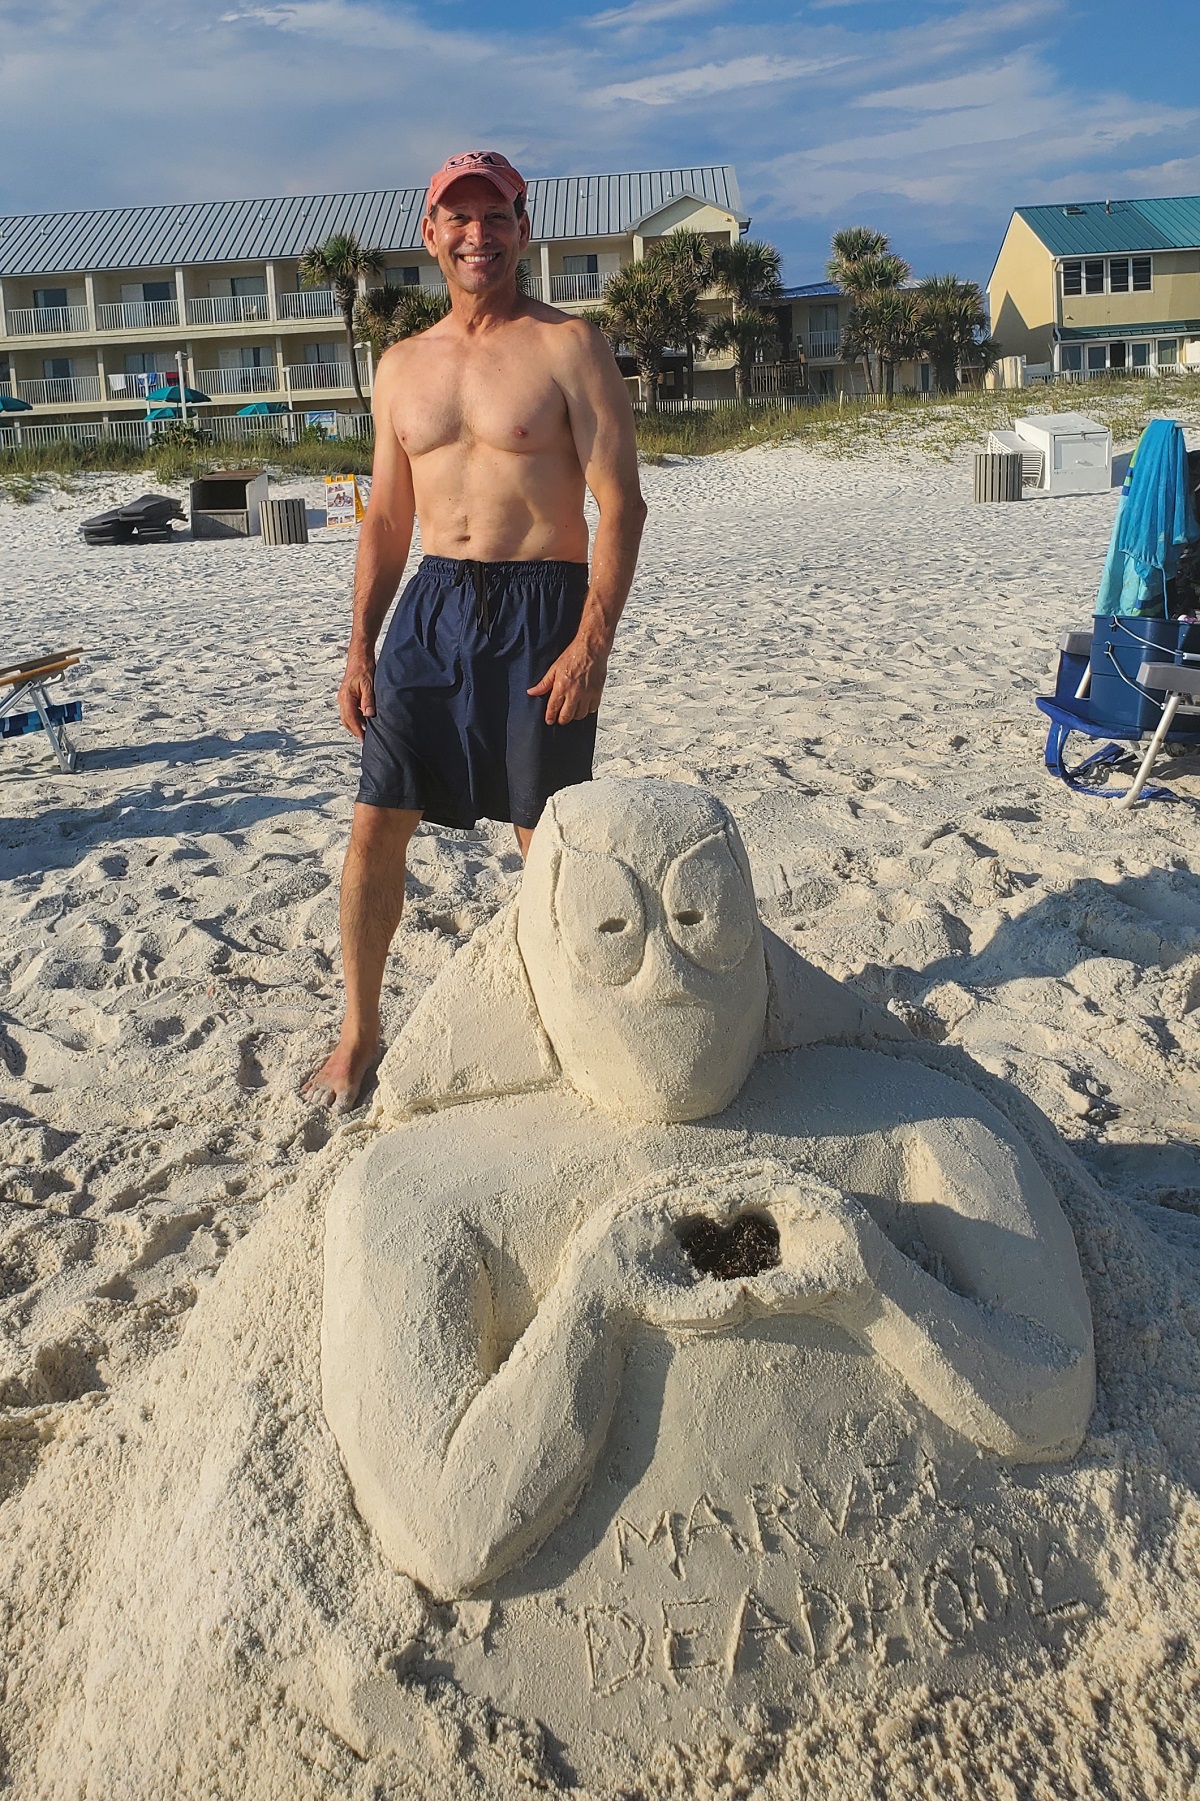 Deadpool as a sand sculpture